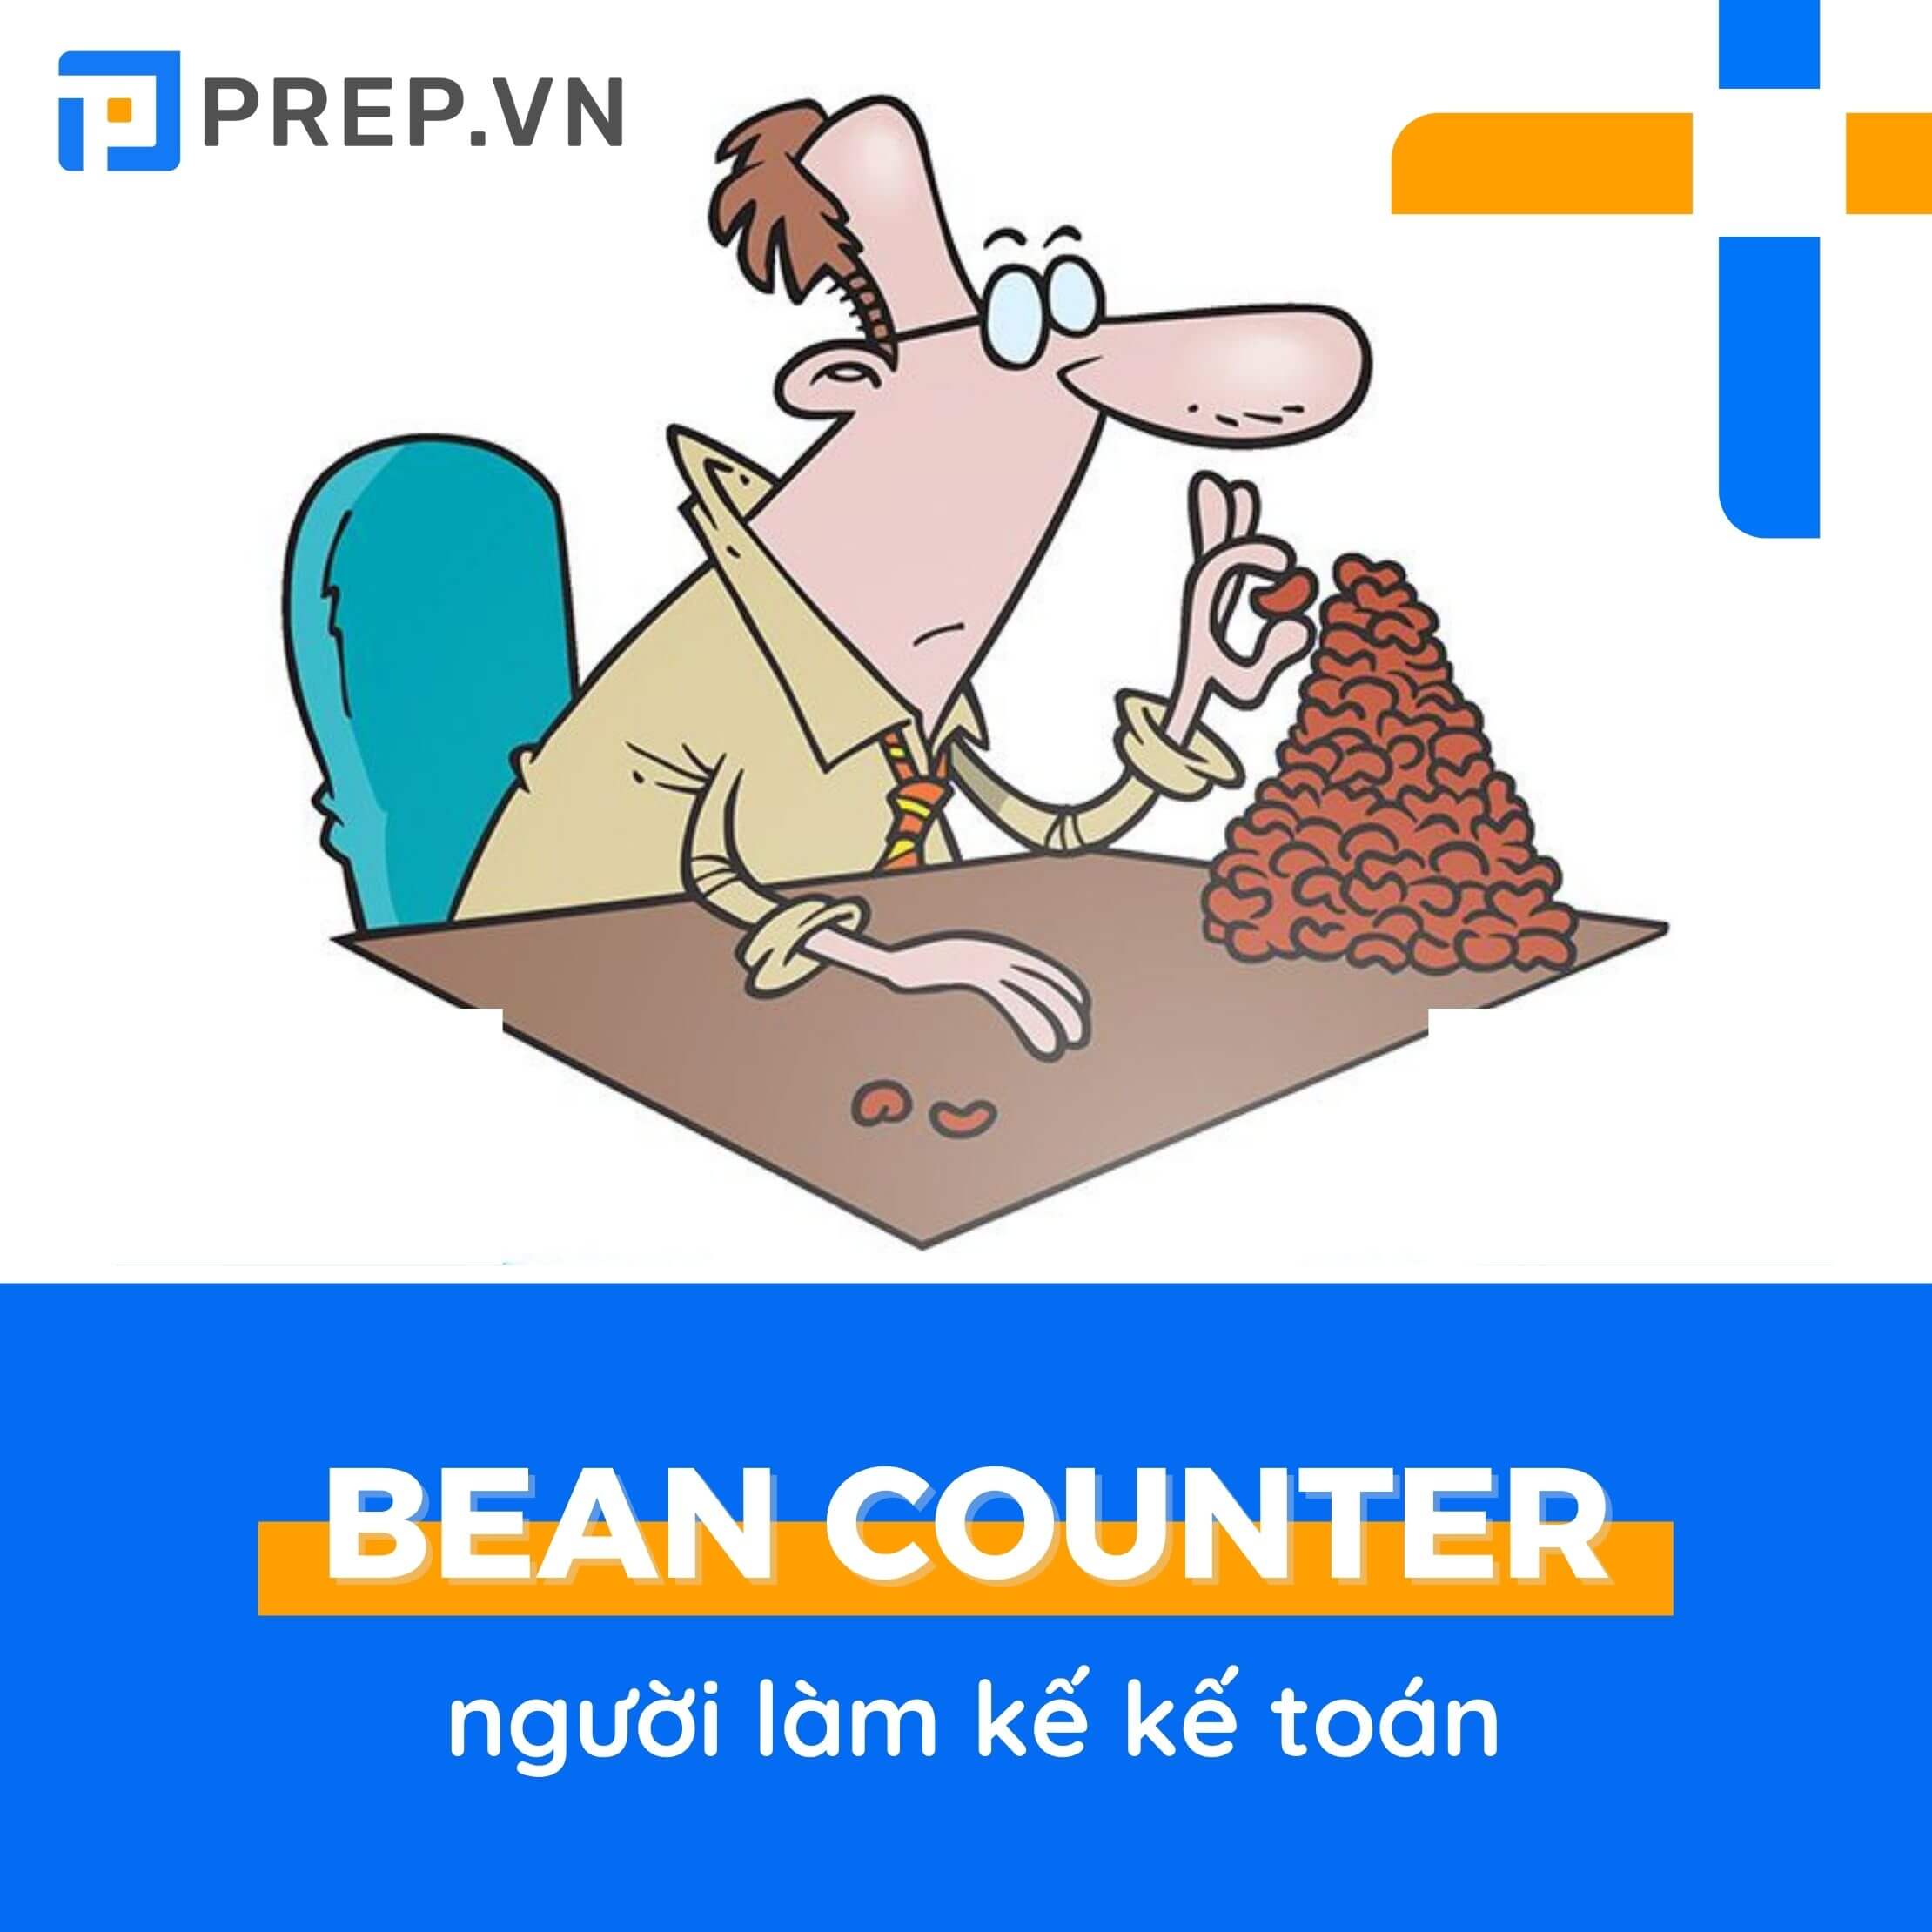 Bean counter